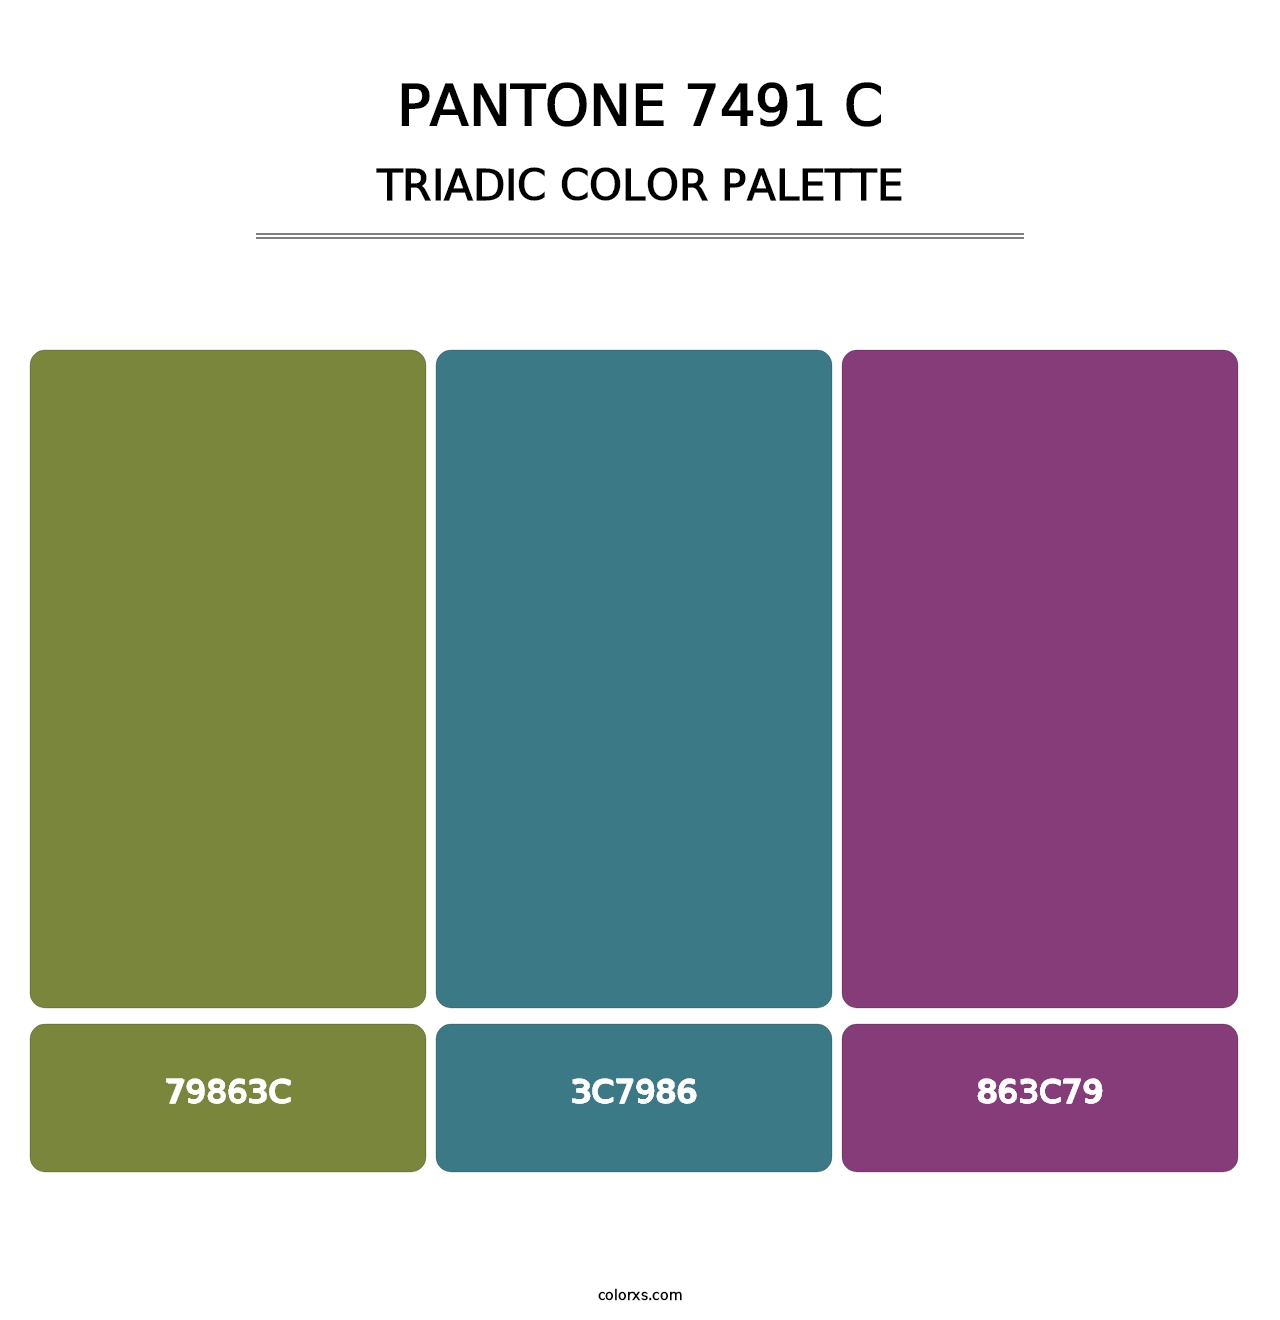 PANTONE 7491 C - Triadic Color Palette